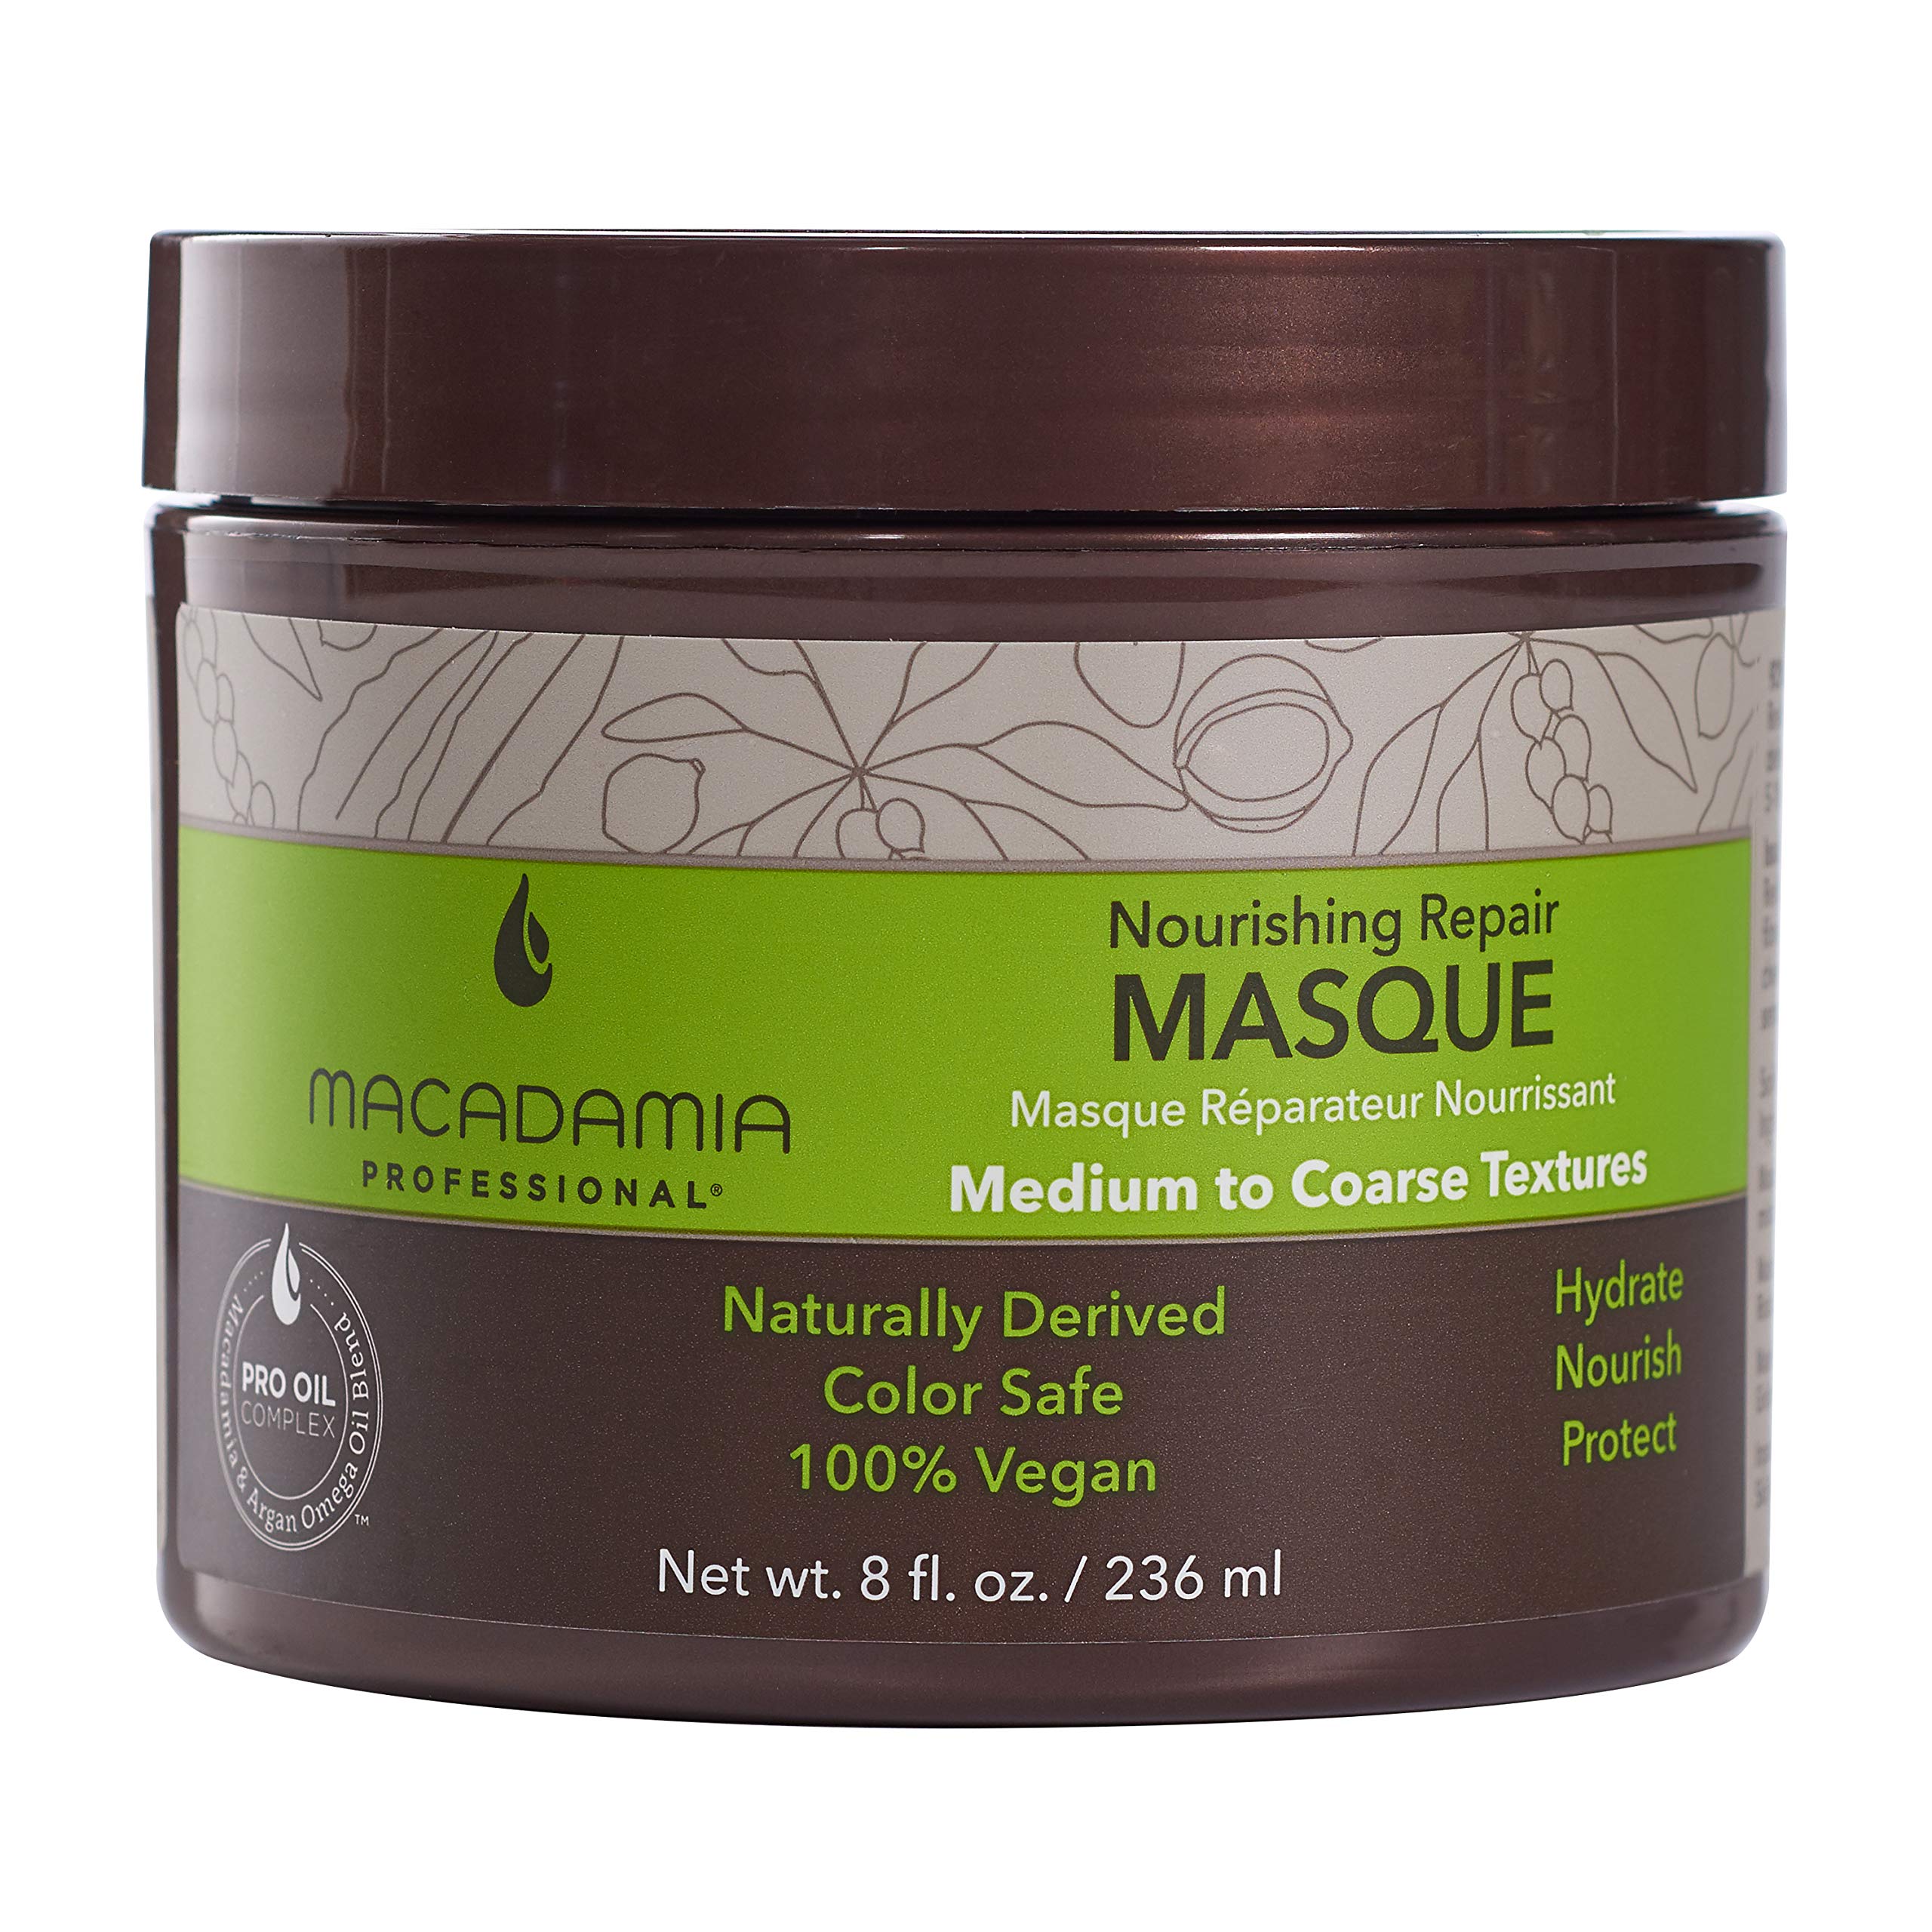 Macadamia Professional Nourishing Repair Masque, 236 ml